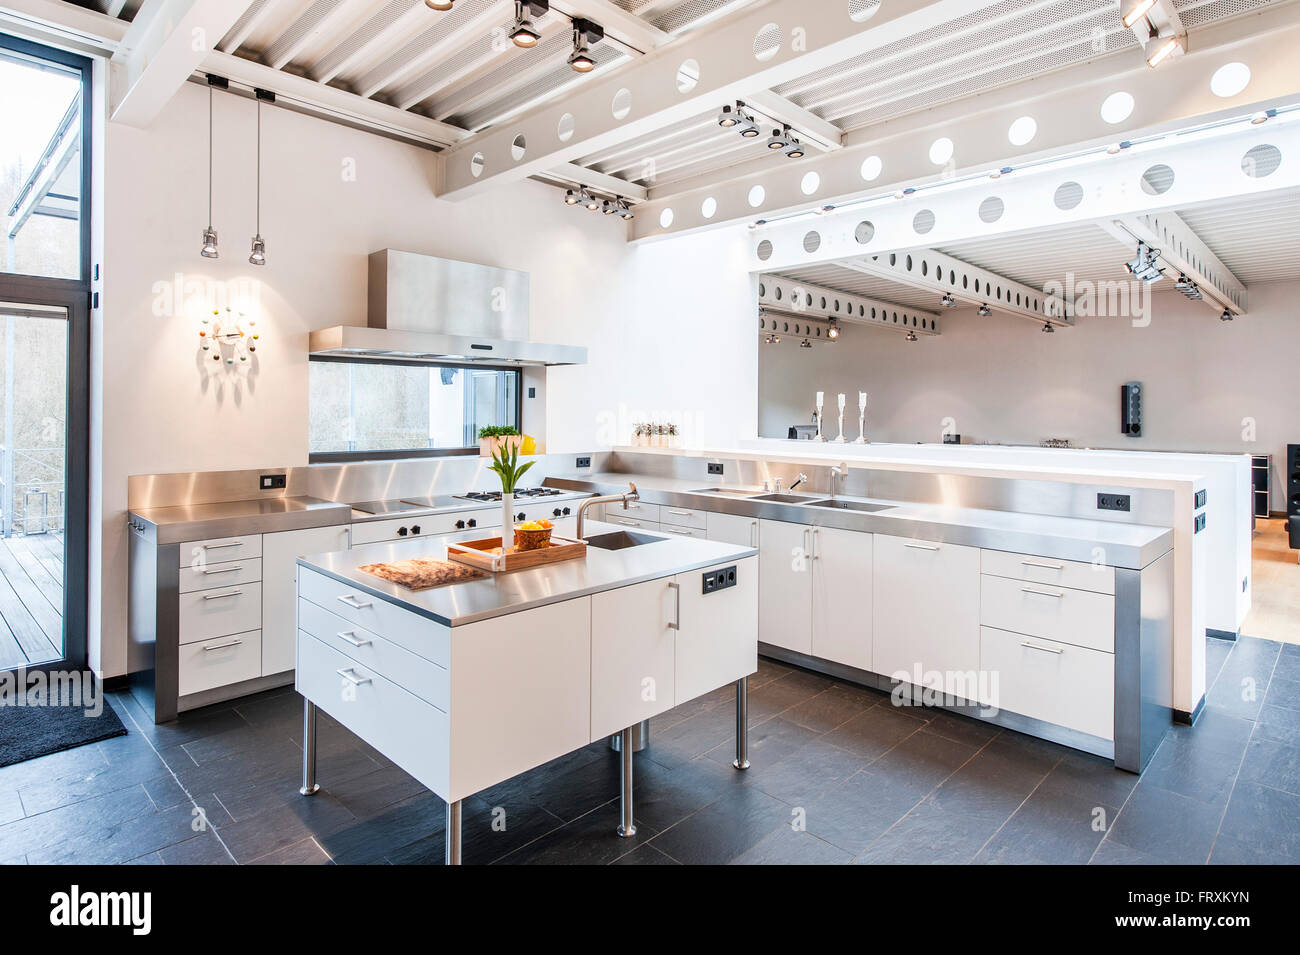 Offene Küche im Inneren einer Bauhaus-Villa, Sauerland, Deutschland Stockfoto